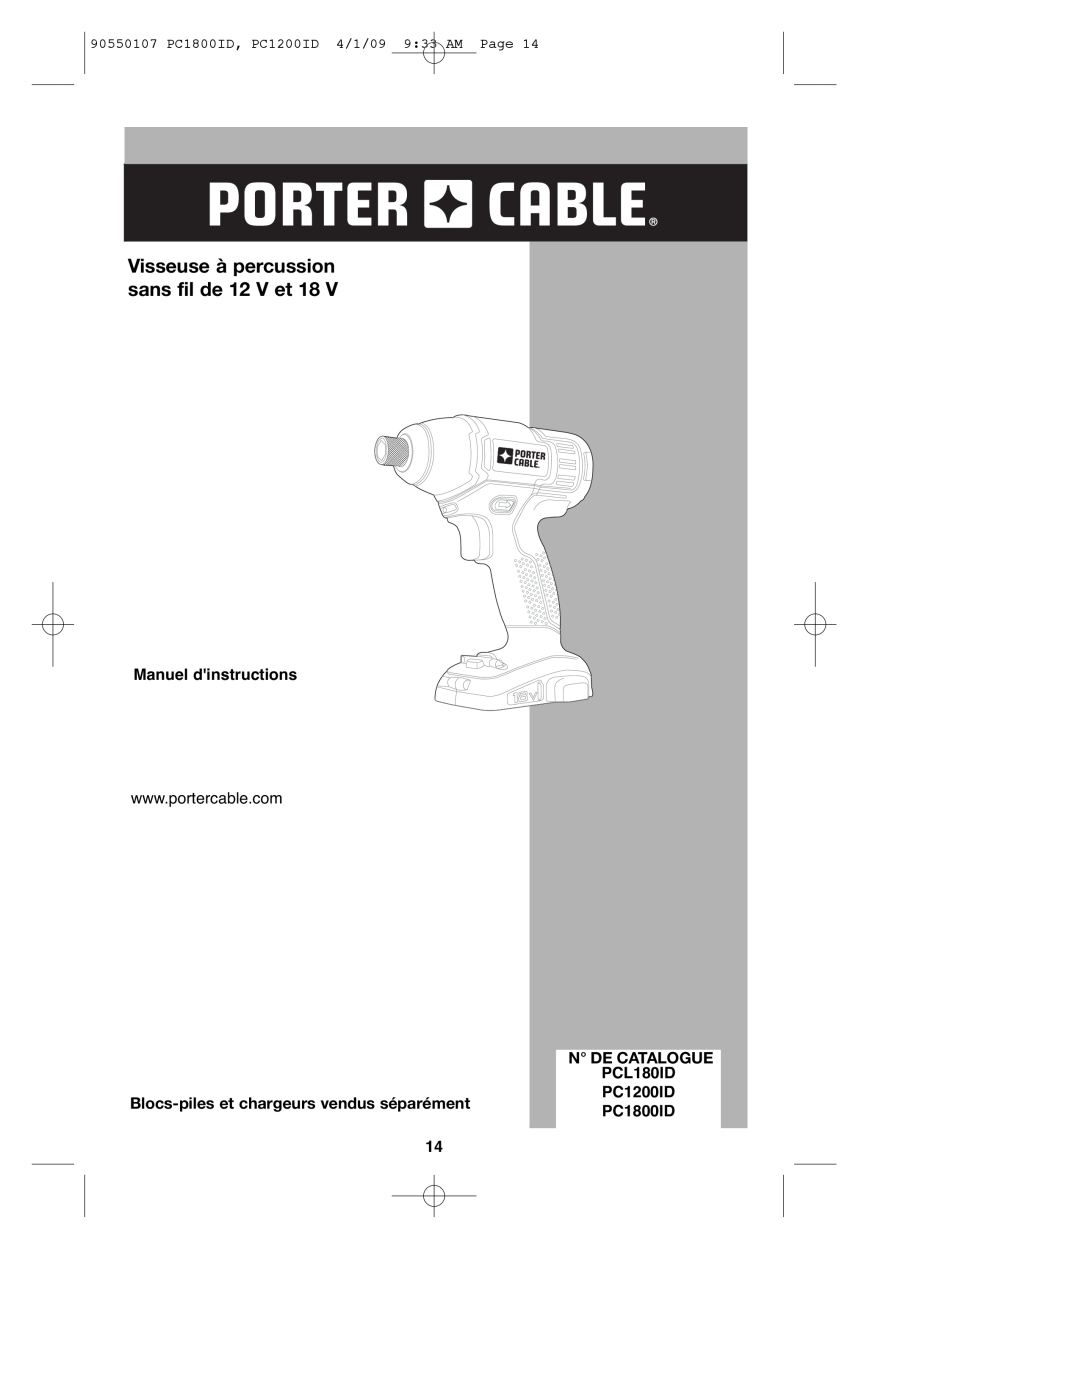 Porter-Cable 90550107 Visseuse à percussion sans fil de 12 V et 18, Manuel dinstructions, N De Catalogue, PCL180ID 